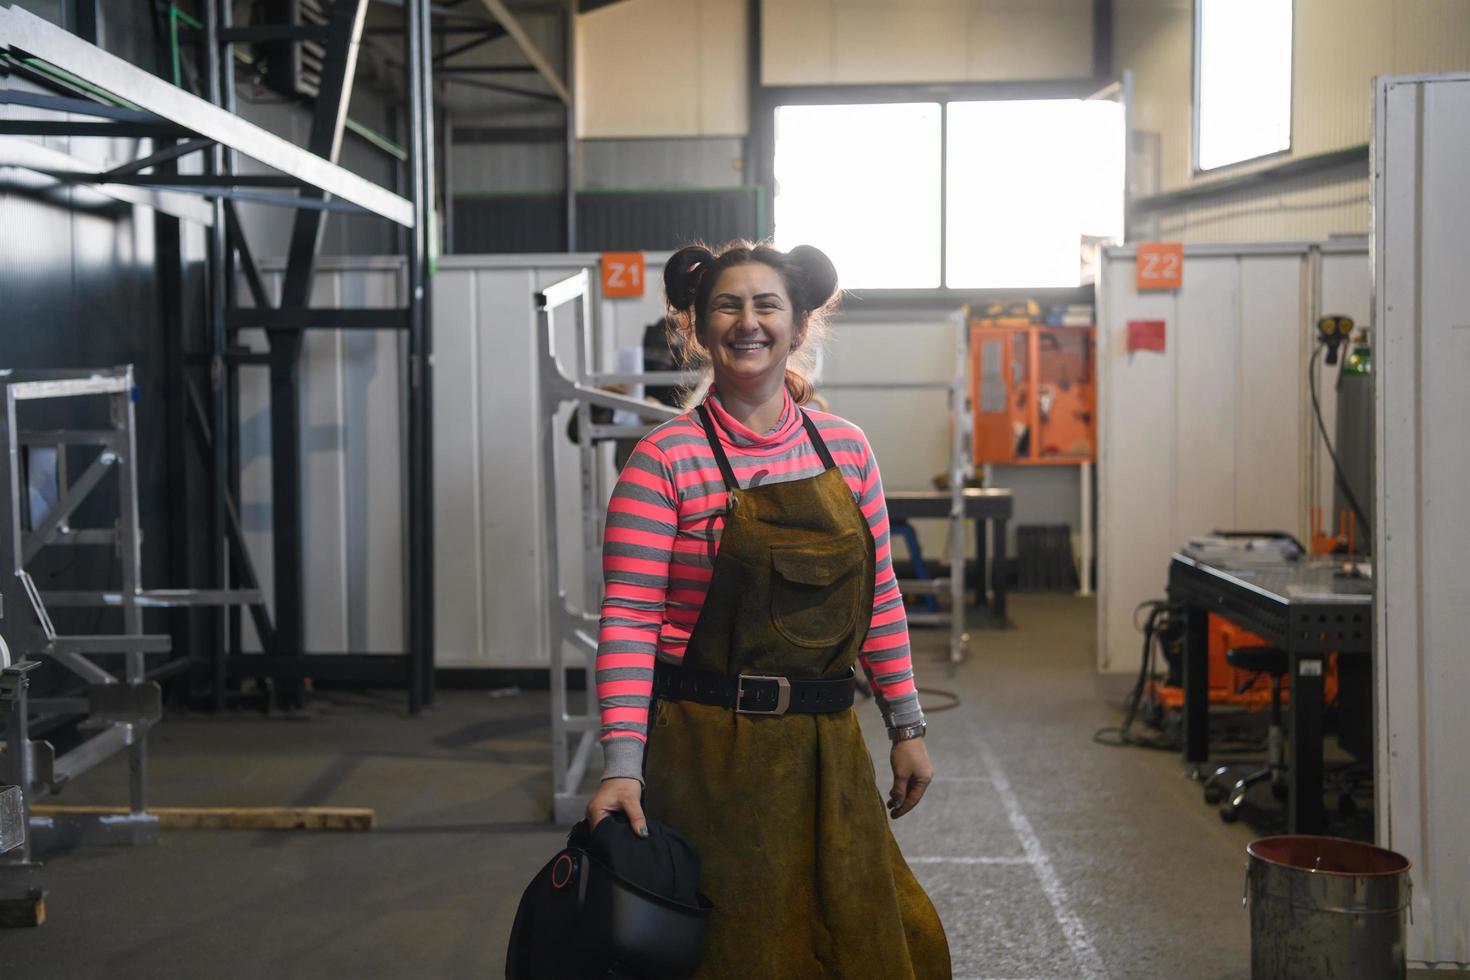 portrait d'une soudeuse tenant un casque et se préparant pour une journée de travail dans l'industrie métallurgique photo